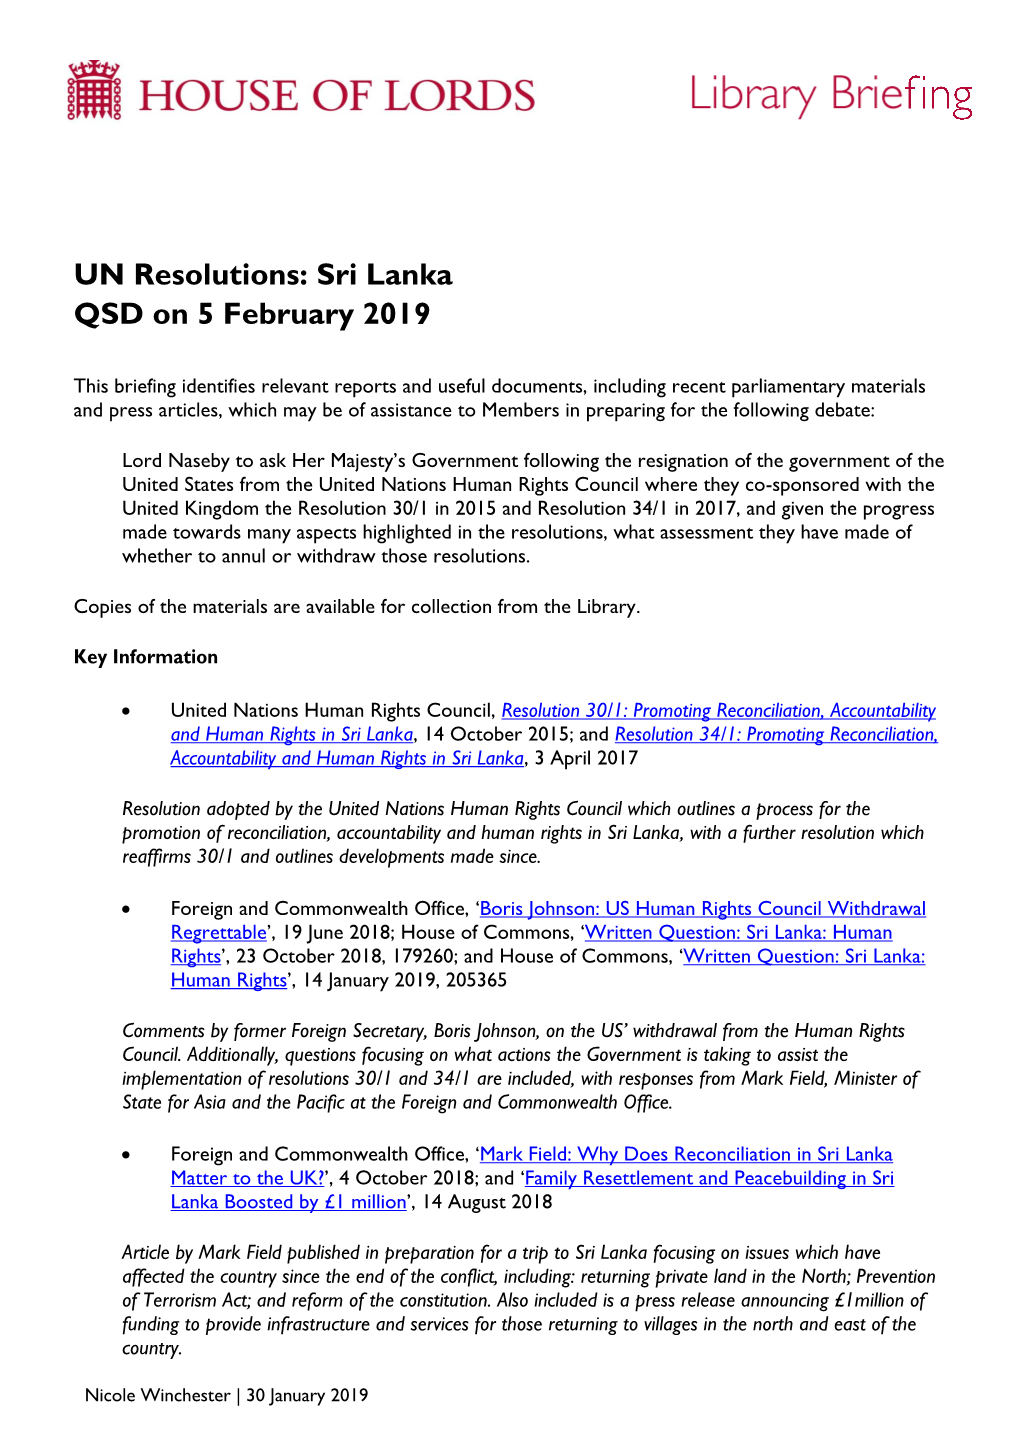 UN Resolutions: Sri Lanka QSD on 5 February 2019